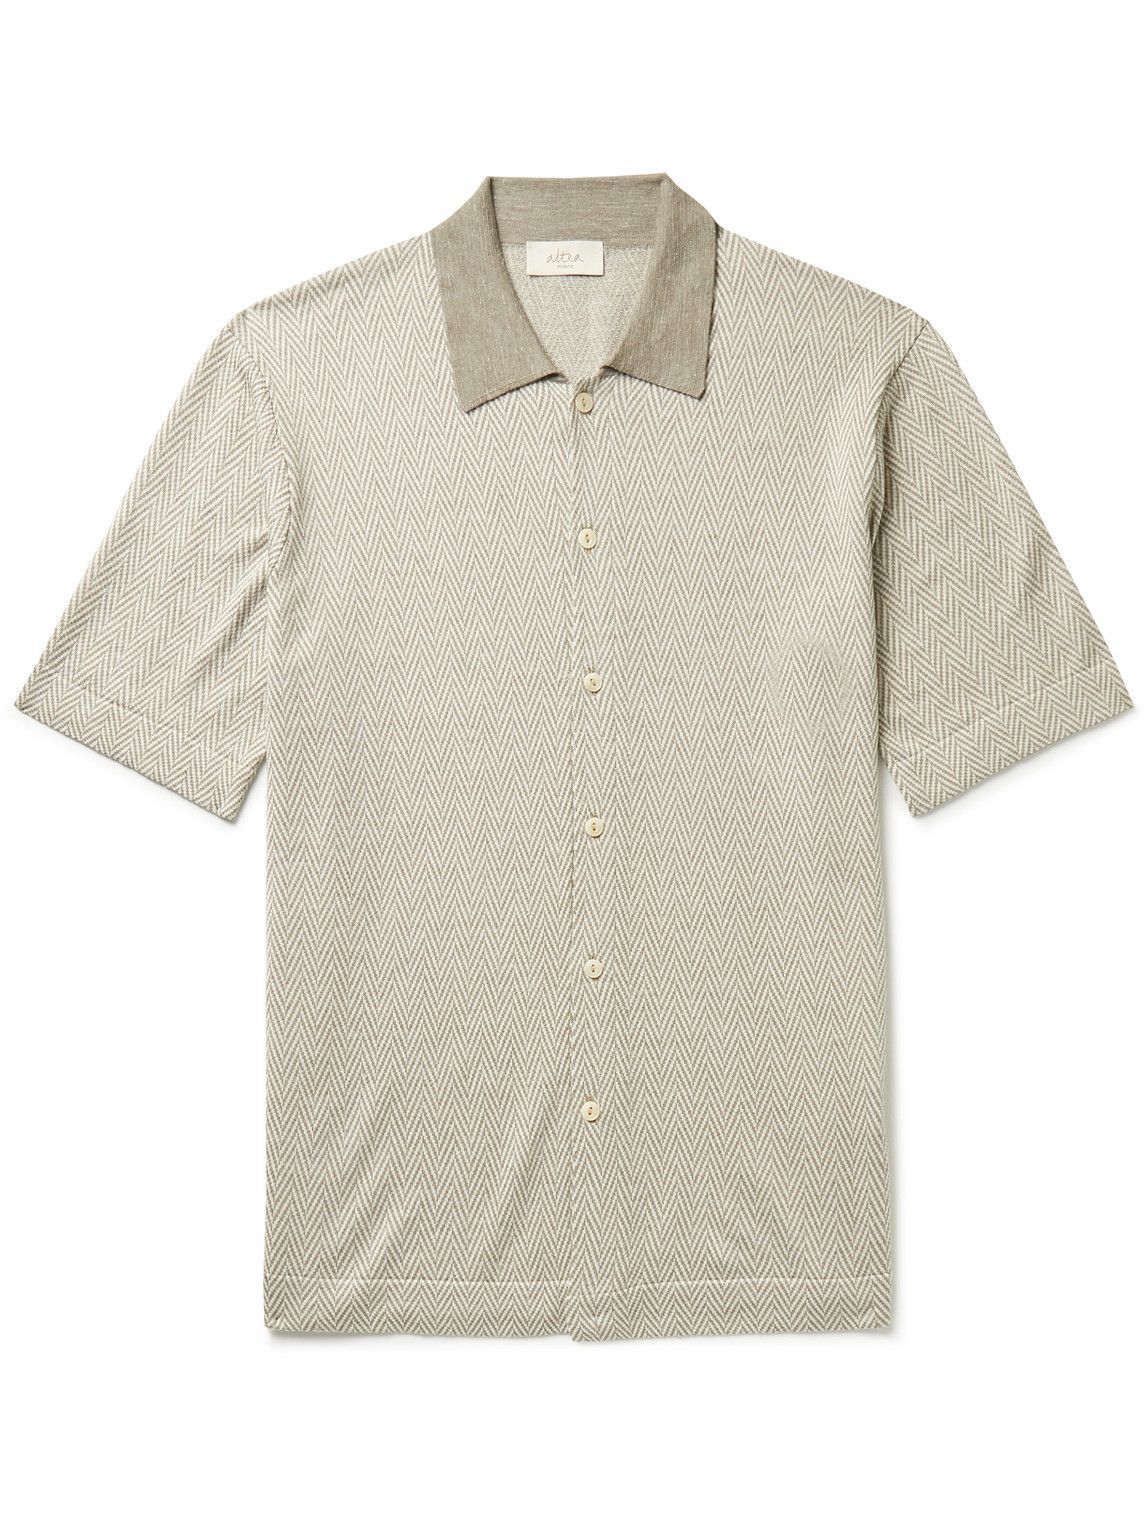 Altea - Herringbone Silk-Blend Shirt - Neutrals Altea